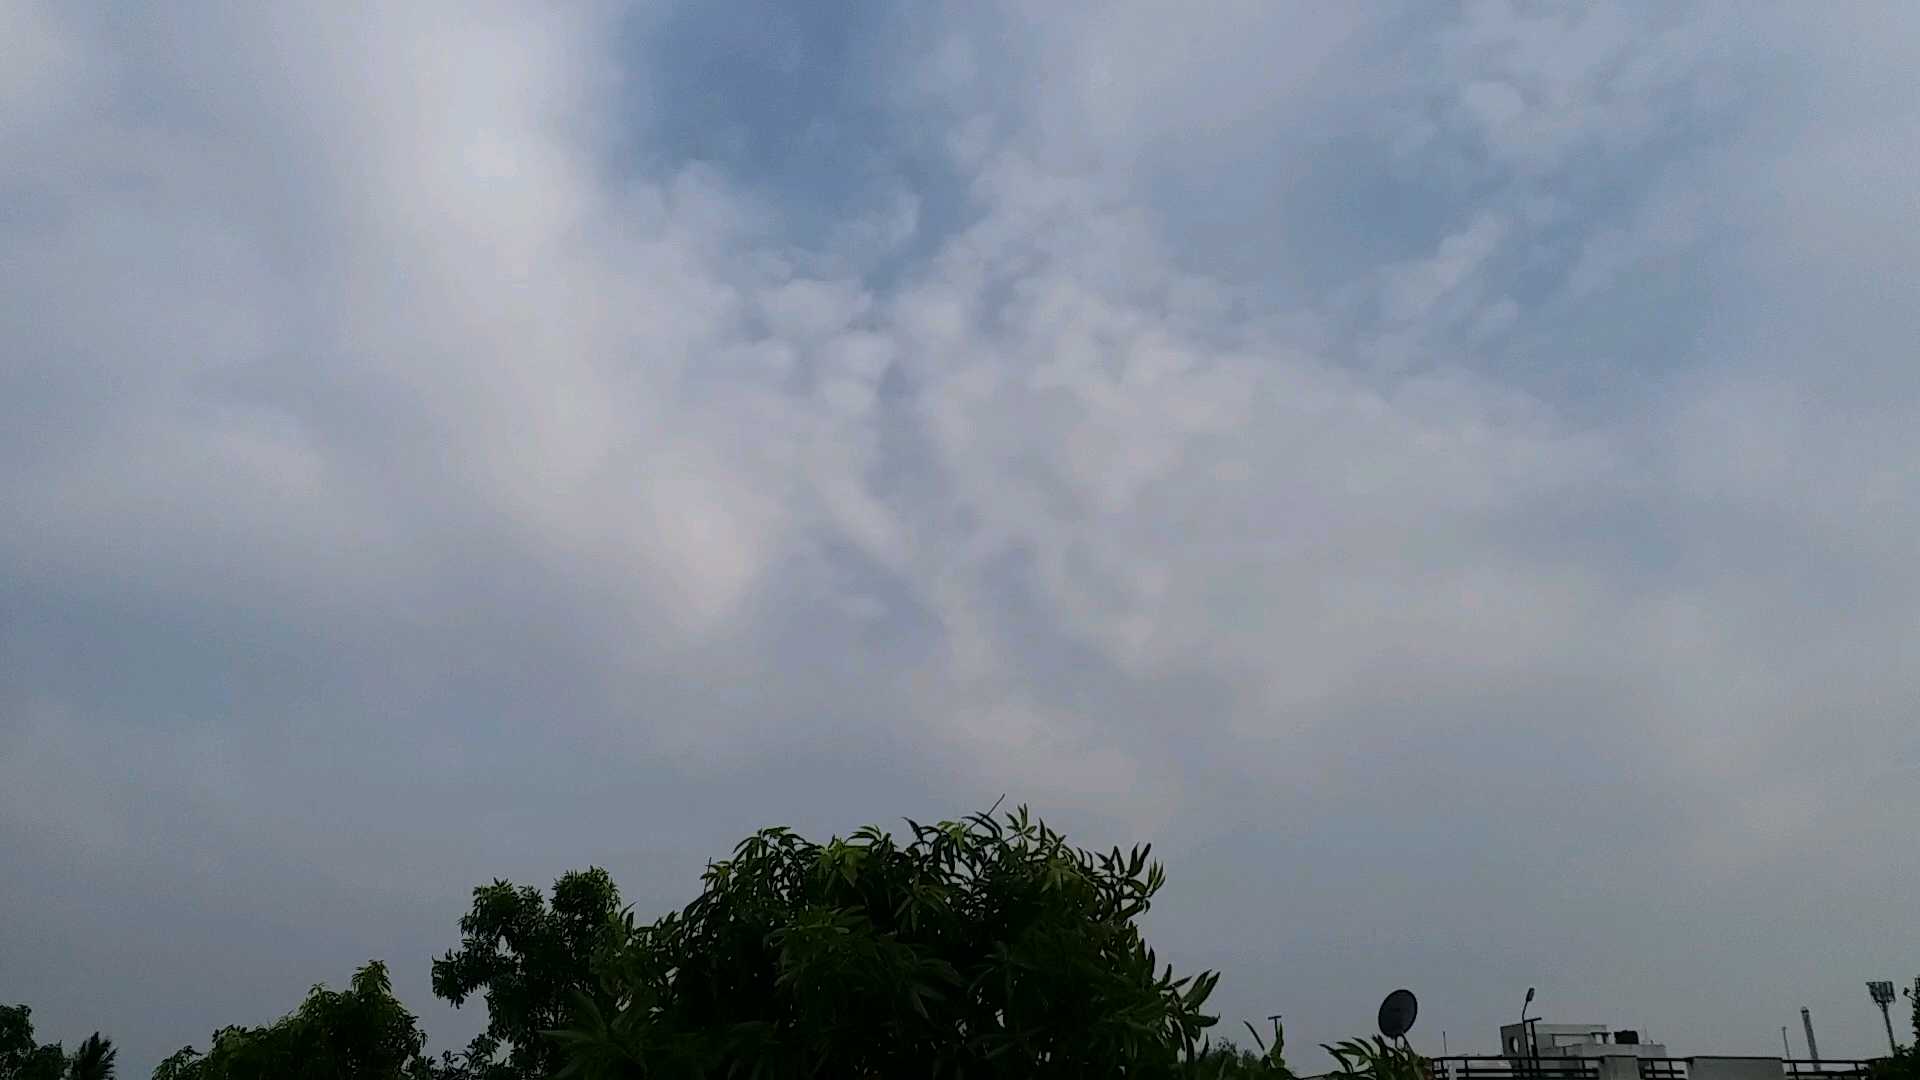 ભાવનગરમાં વાદળછાયા વાતાવરણ વચ્ચે ભીમ અગિયારસની ઉજવણી